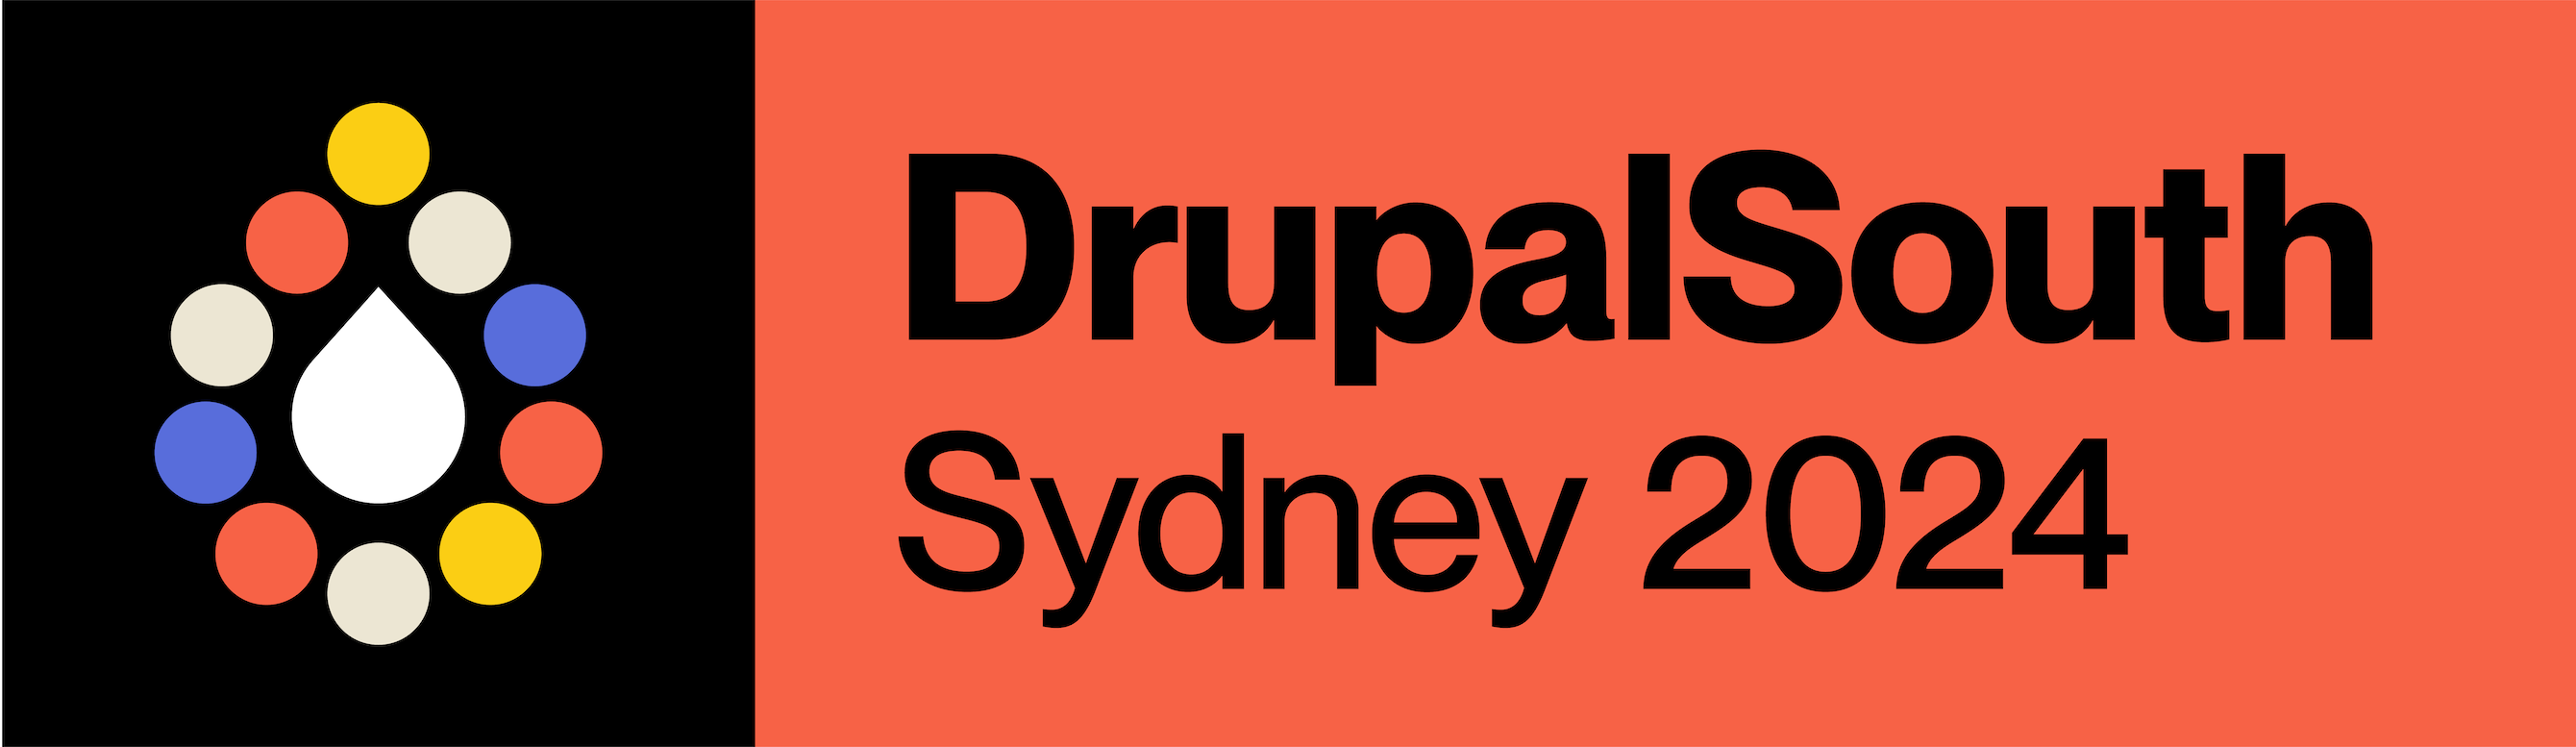 DrupalSouth Sydney 2024 logo